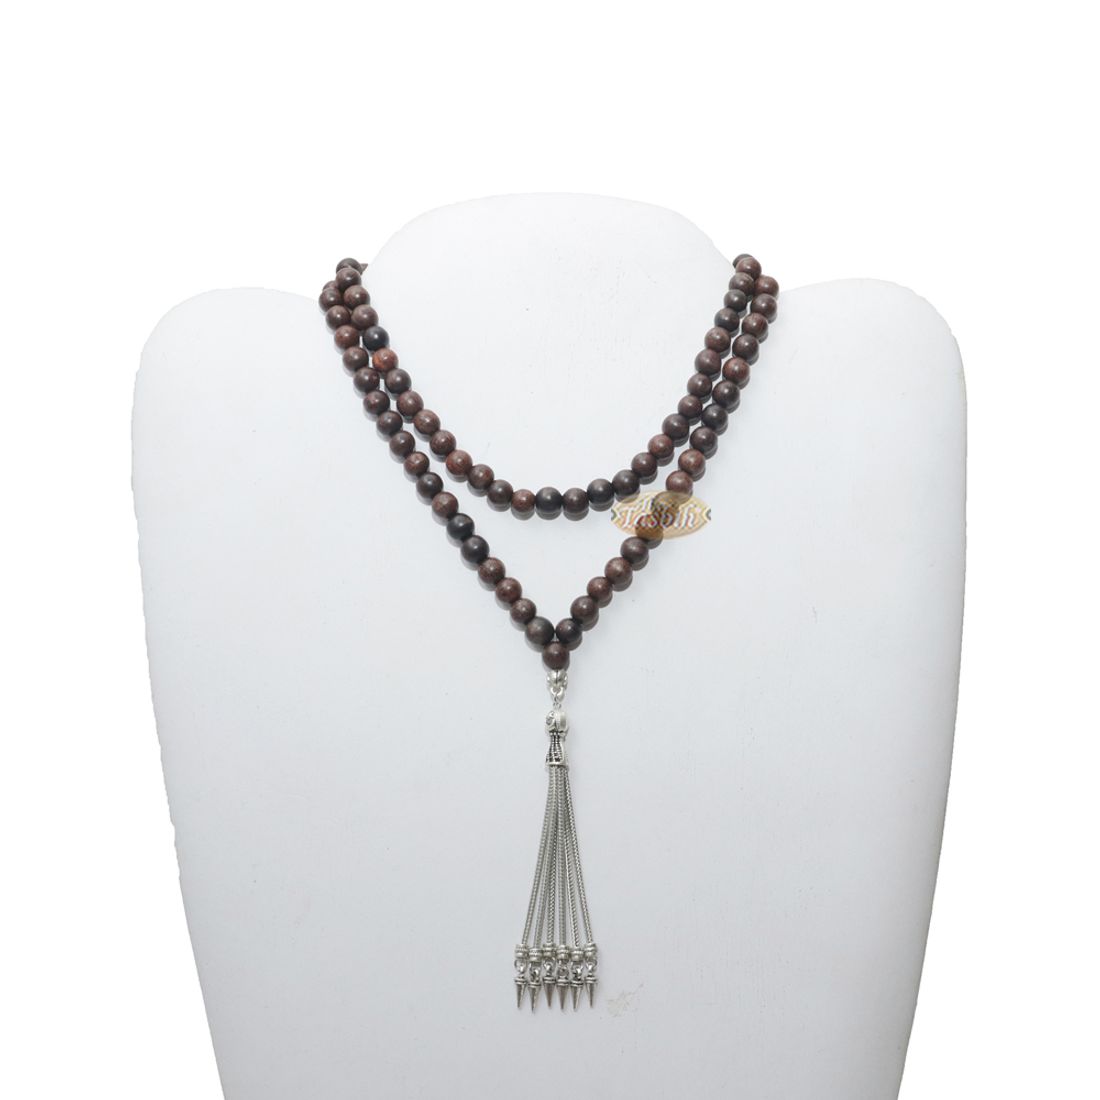 Tamarind Wood Tasbih – 8mm Beads with Ornamental Silver-tone Fox-tail Chain Tassel